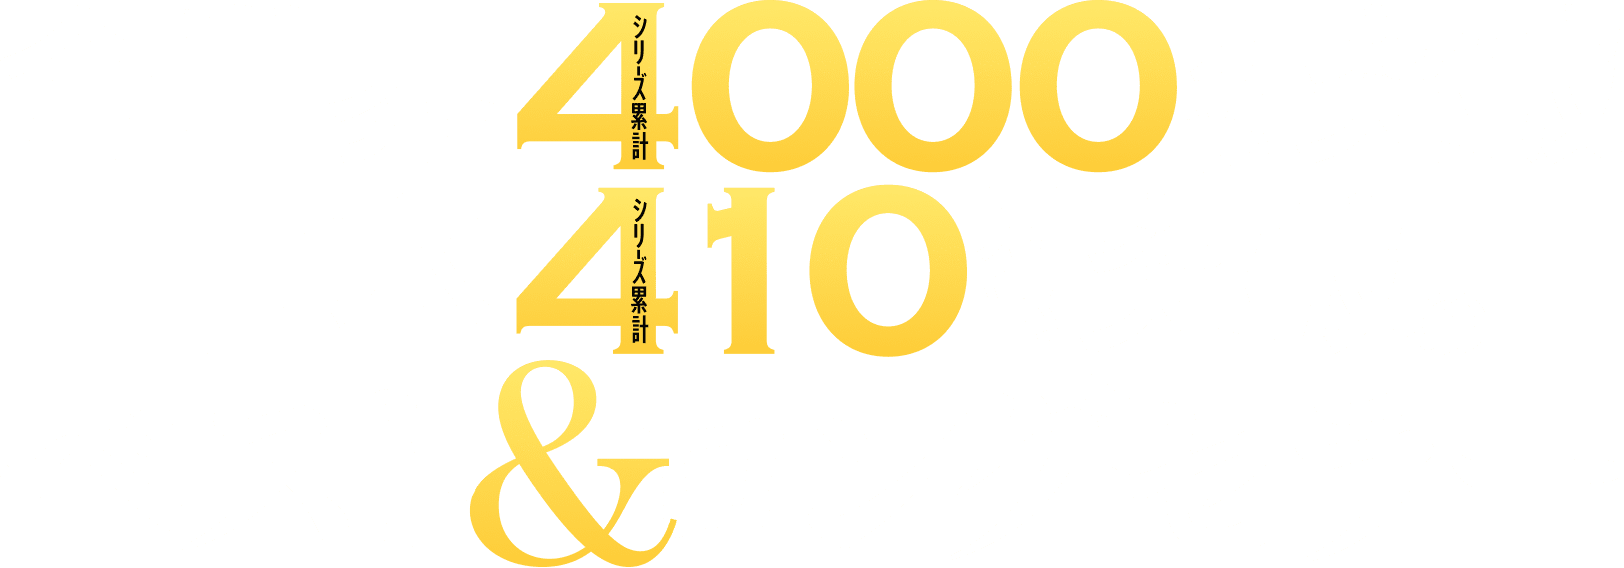 全世界シリーズ累計4000万部突破日本シリーズ累計410万部突破のベスト＆ロングセラー